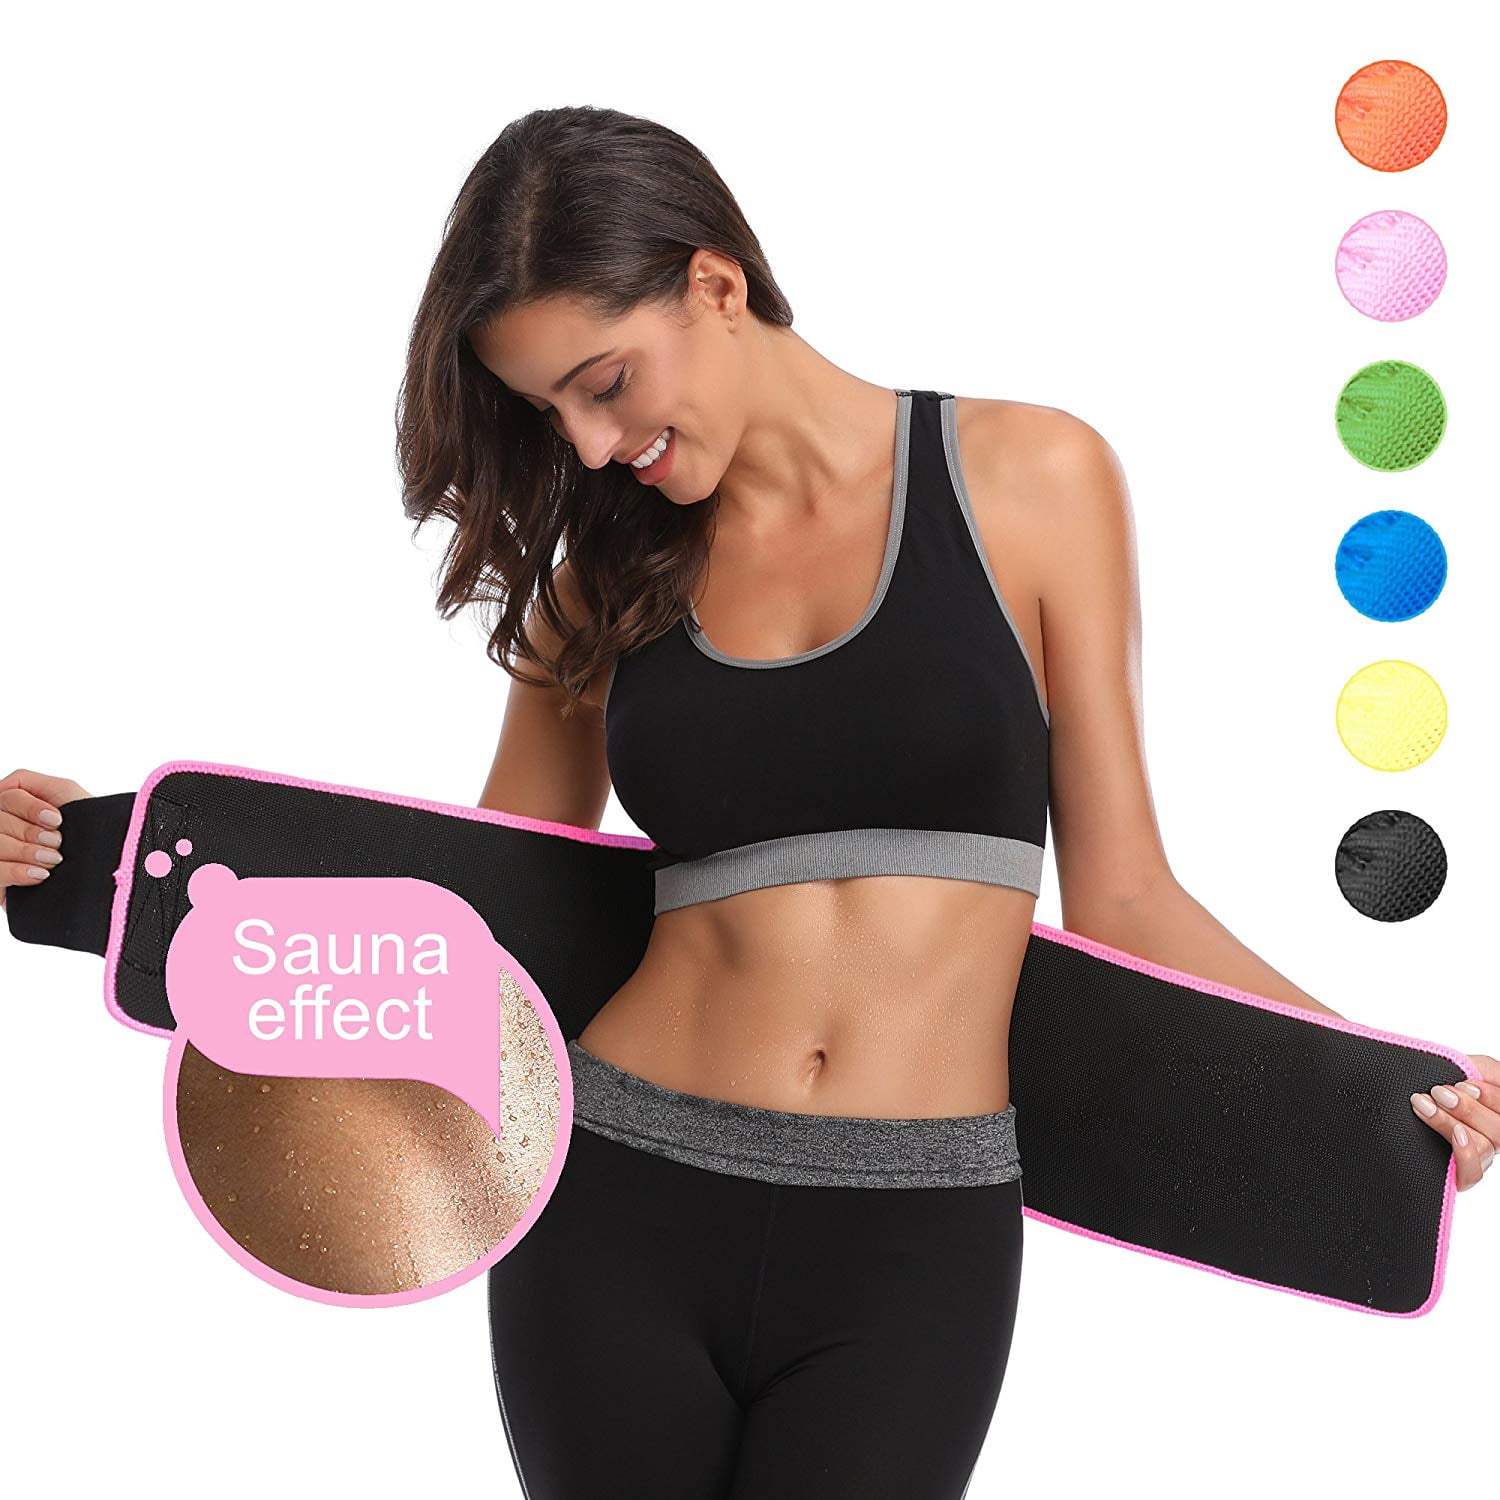 Sykooria Waist Trainer for Women Waist Cincher Trimmer Adjustable Corset Sweat Belt for Women Weight Loss Workout Fitness